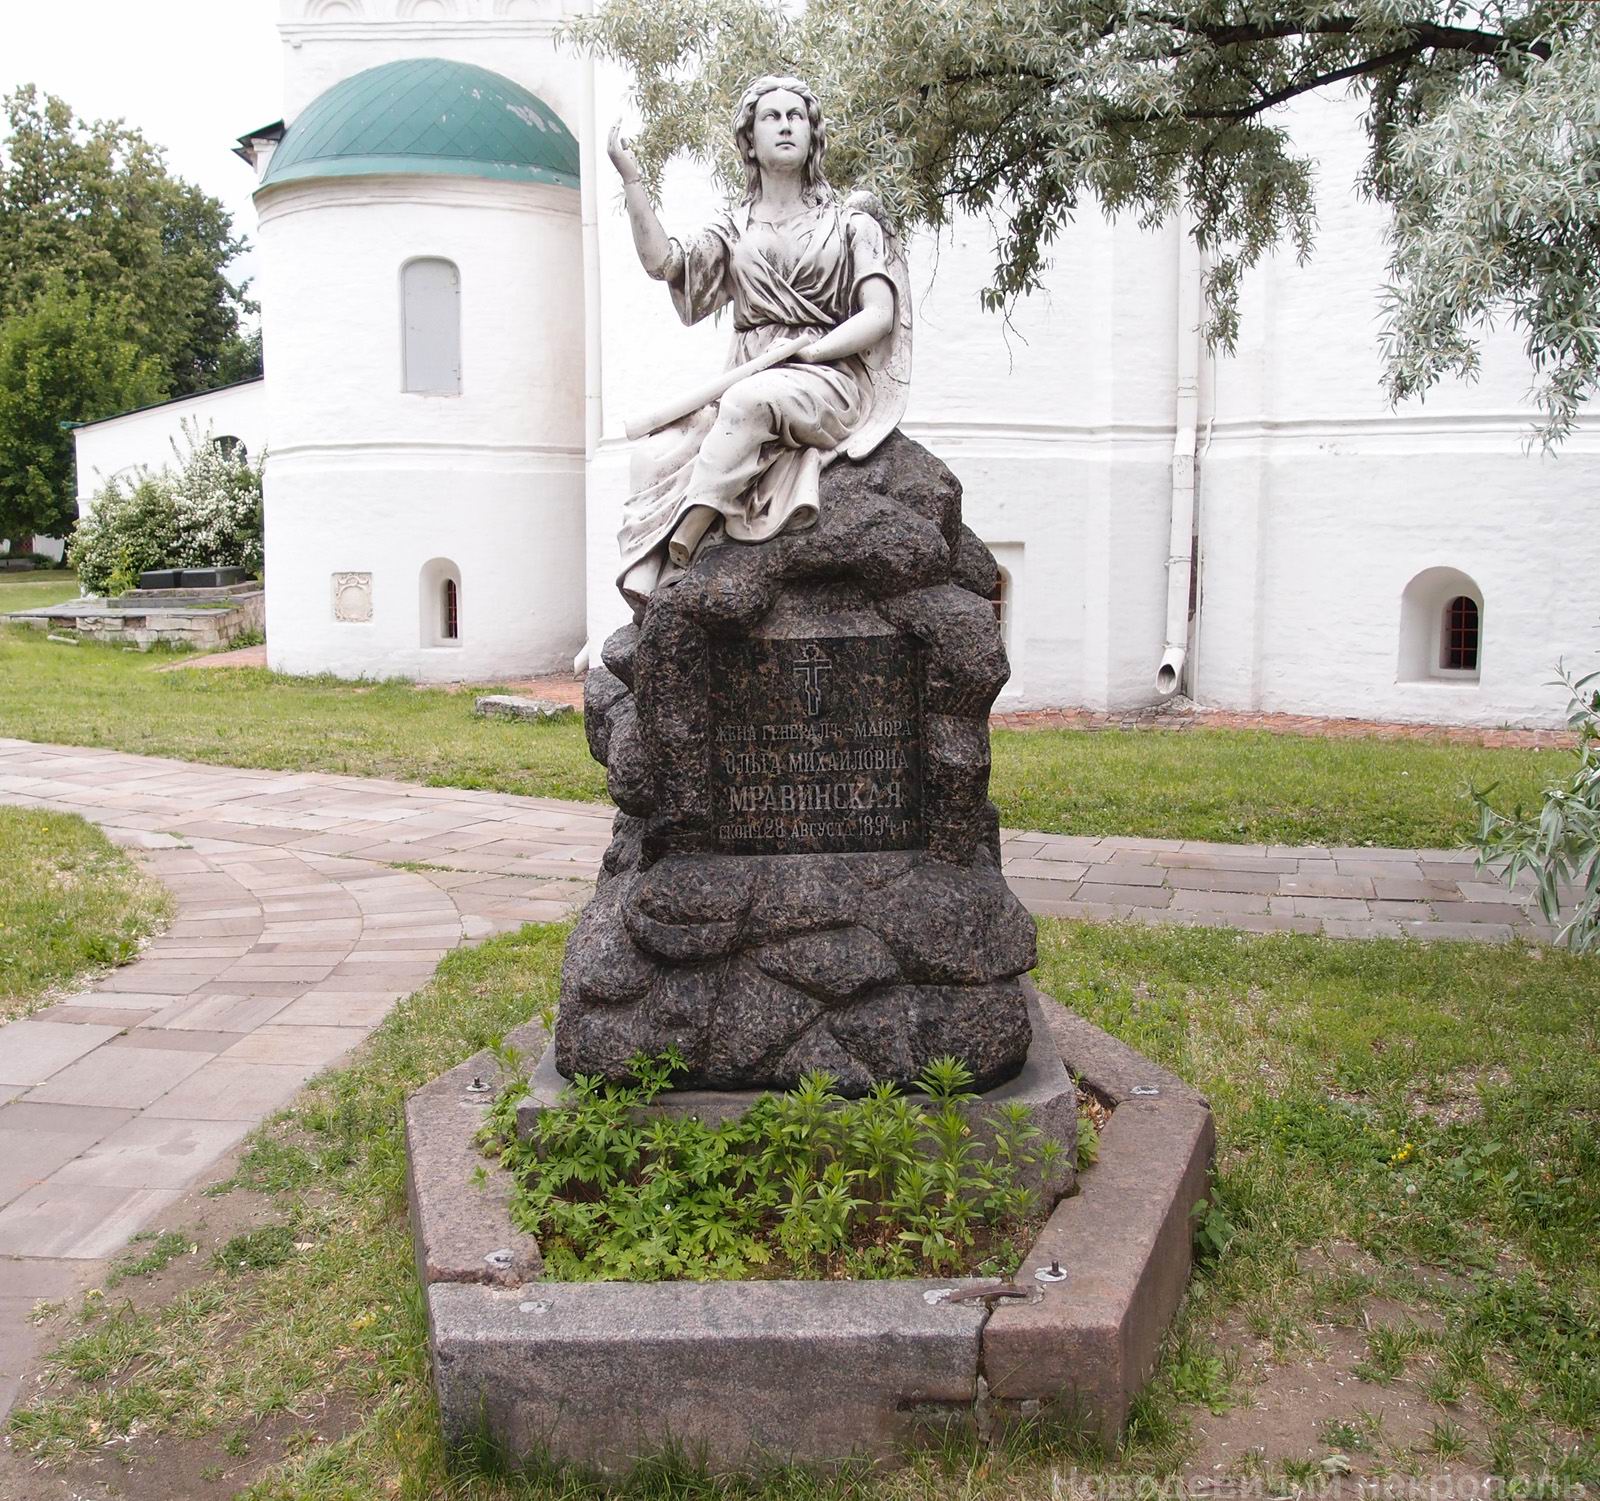 Памятник на могиле Мравинской О.М. (1844-1894), в Новодевичьем монастыре. Нажмите левую кнопку мыши, чтобы увидеть памятник сбоку.